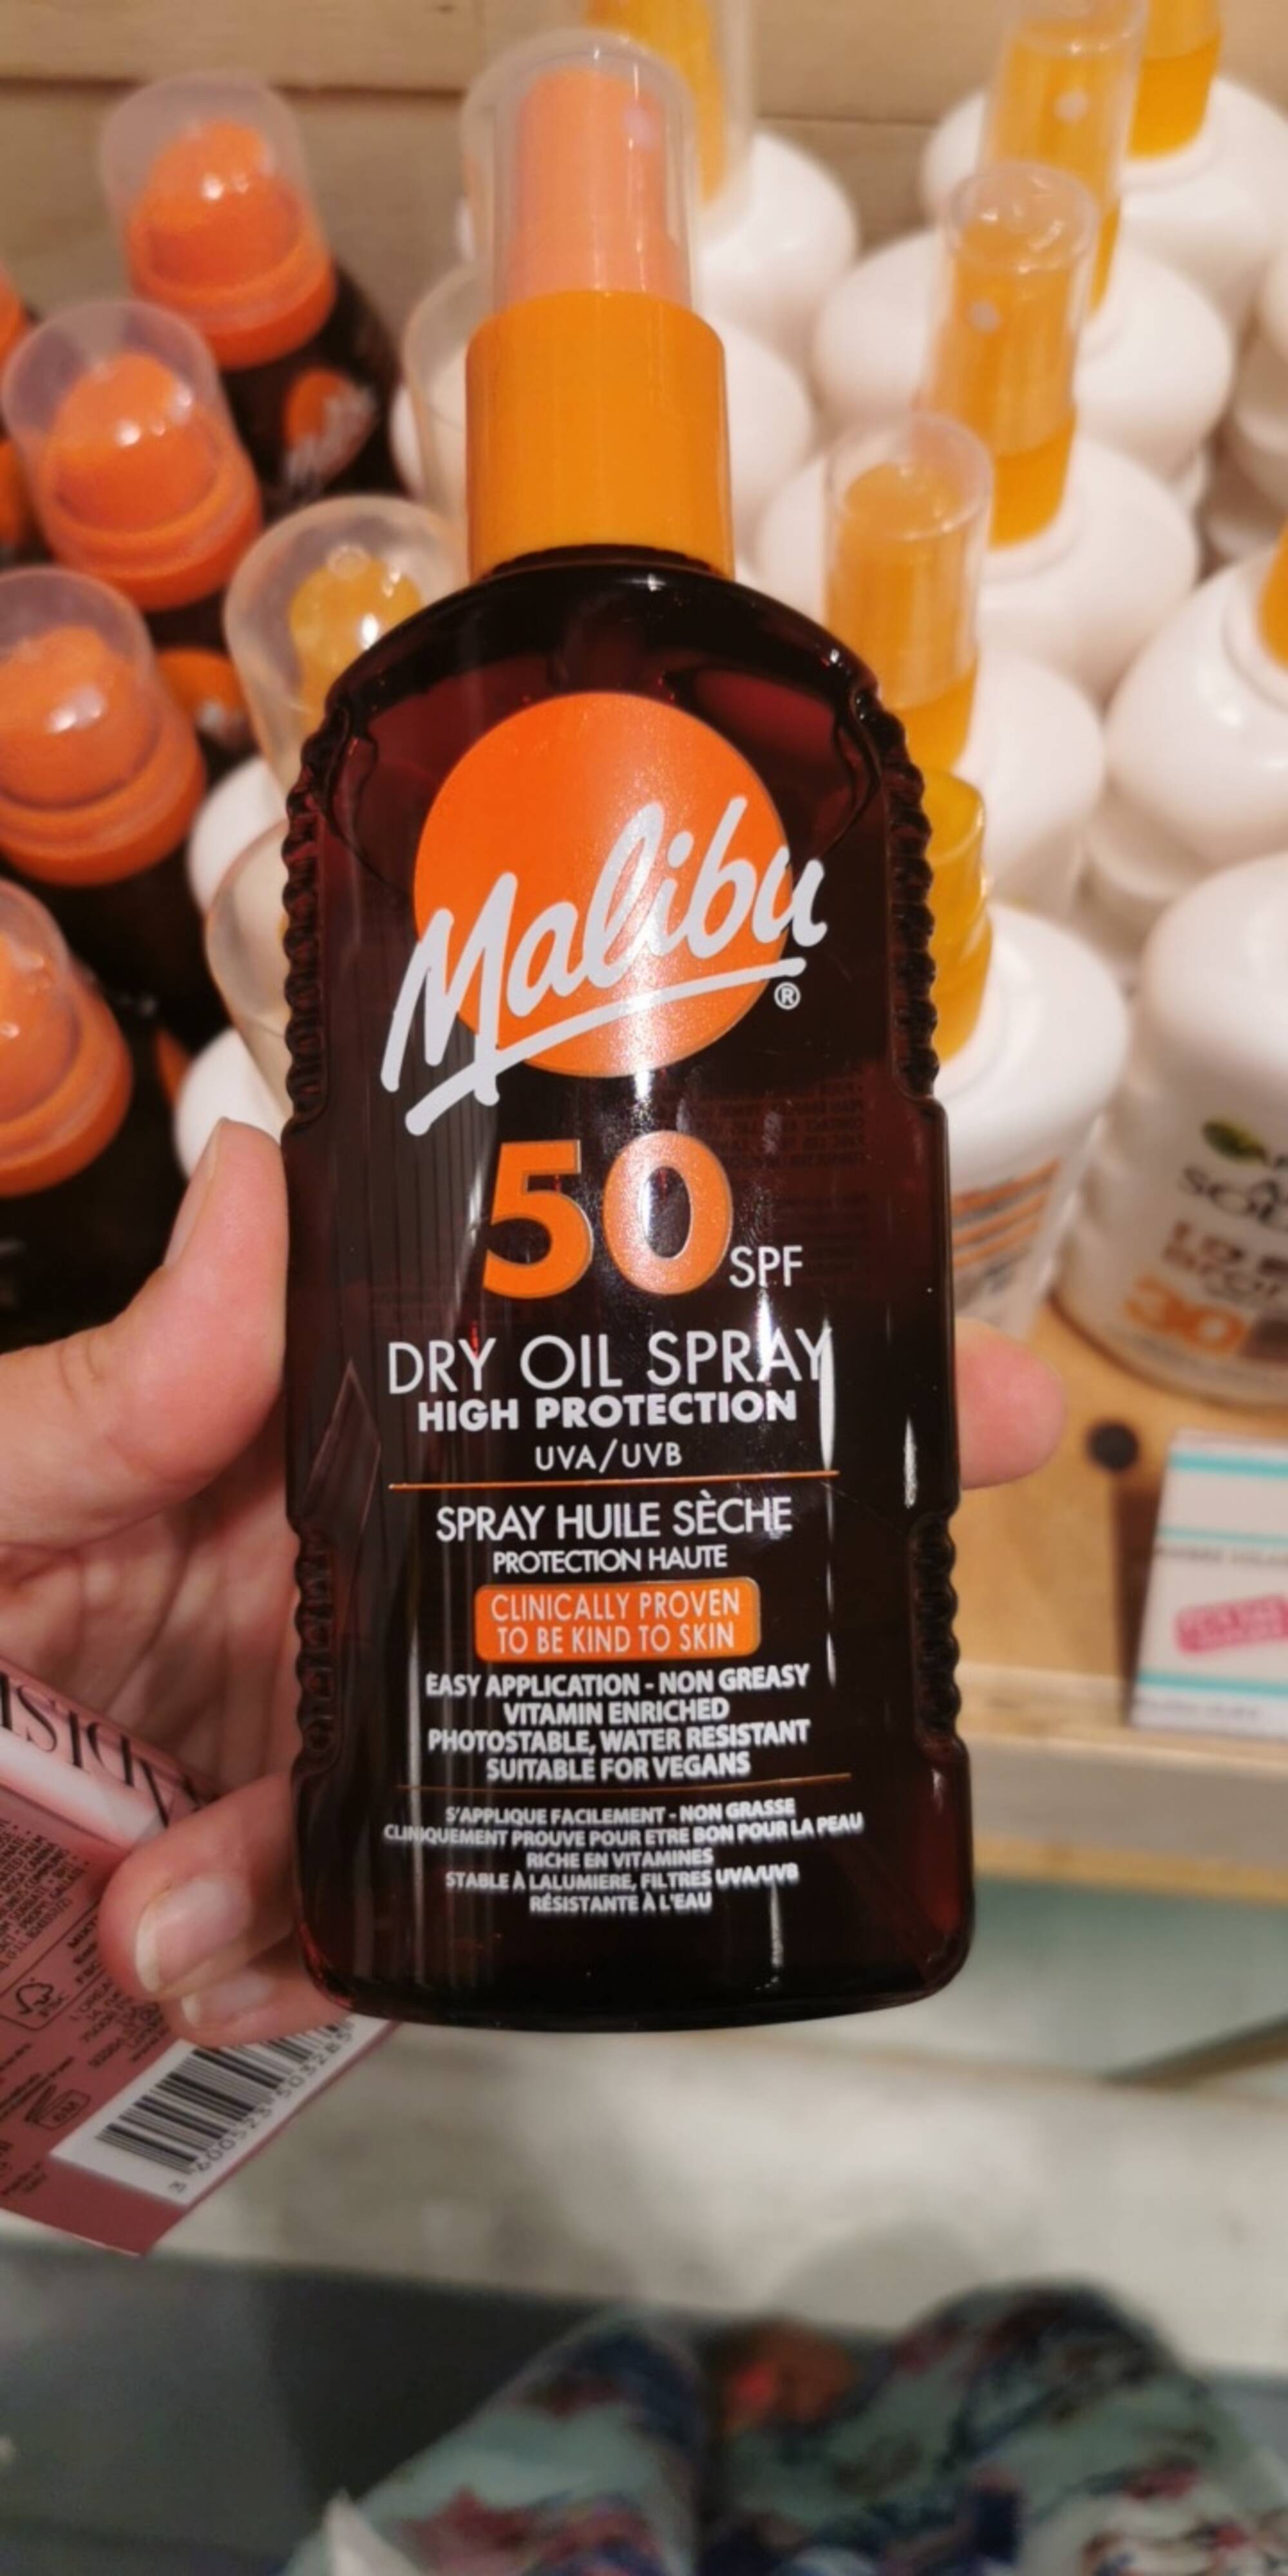 MALIBU - Spray huile sèche SPF 50